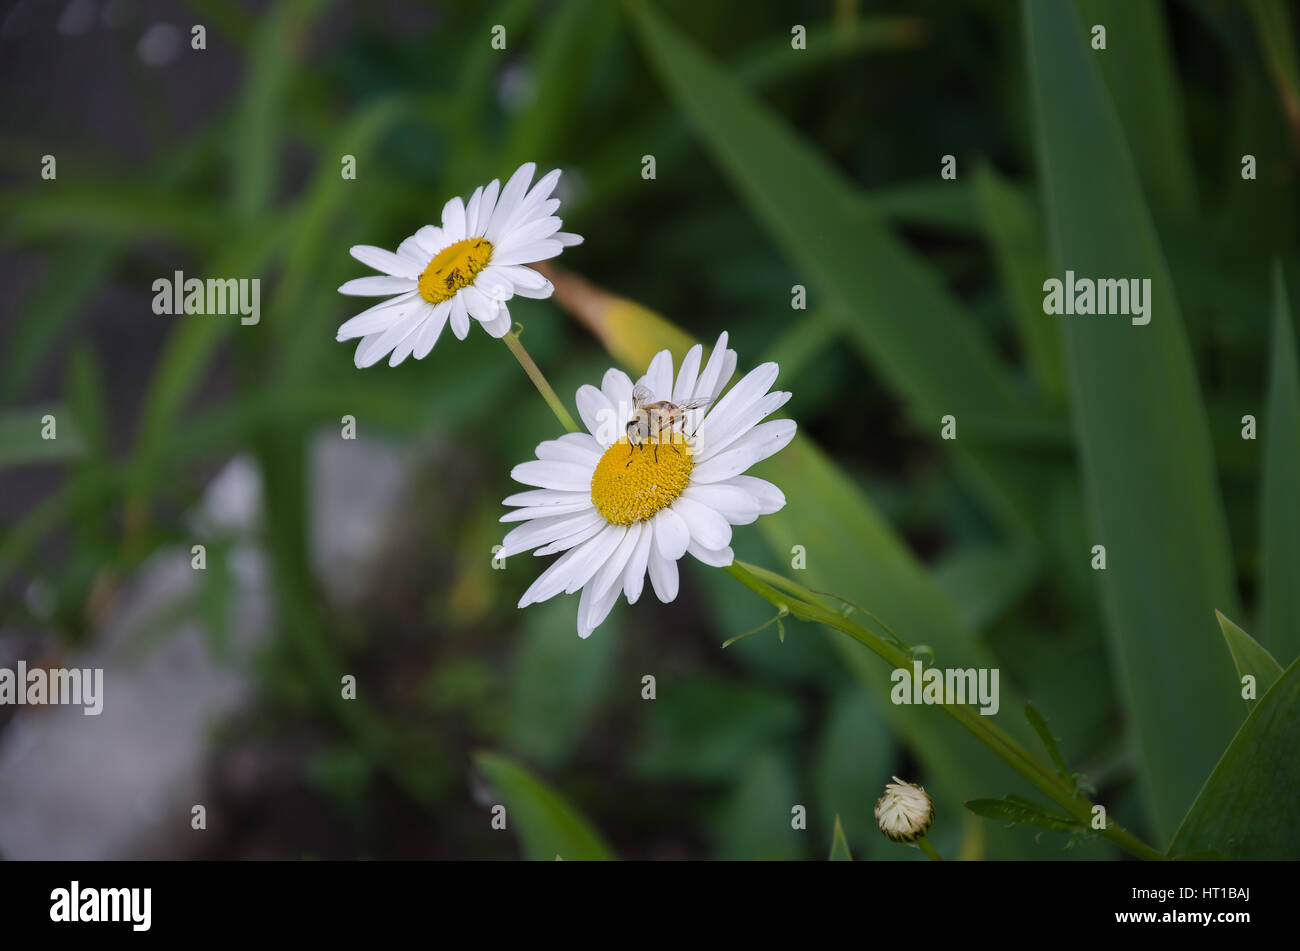 In estate il giardino delle api con ali trasparenti e un Daisy bianca con una foglia verde Foto Stock